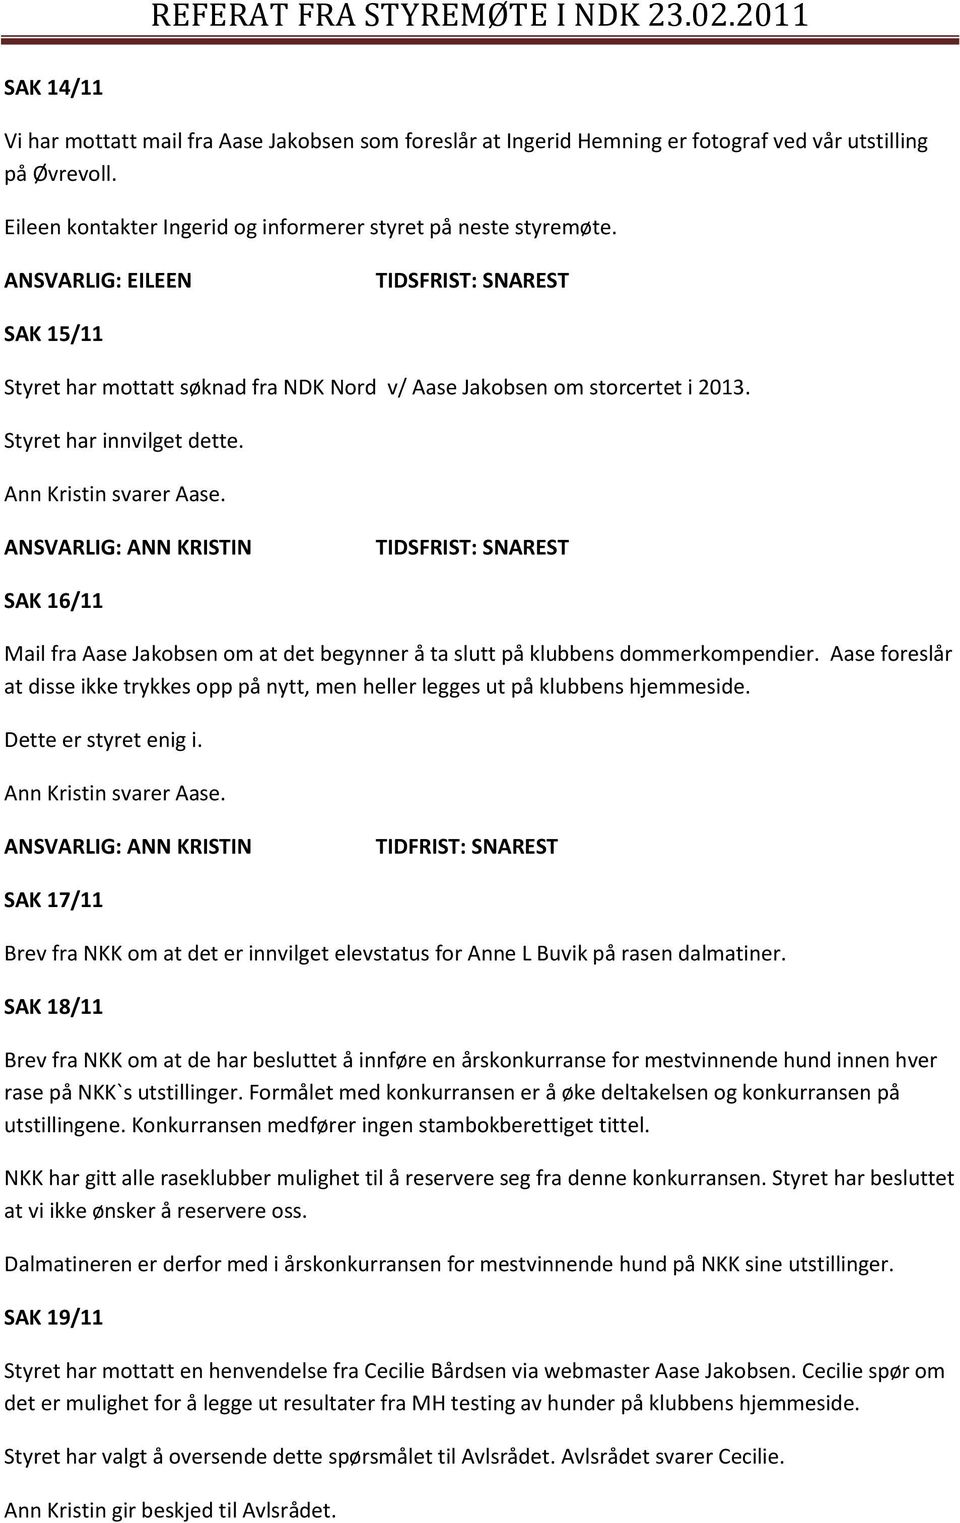 SAK 16/11 Mail fra Aase Jakobsen om at det begynner å ta slutt på klubbens dommerkompendier. Aase foreslår at disse ikke trykkes opp på nytt, men heller legges ut på klubbens hjemmeside.